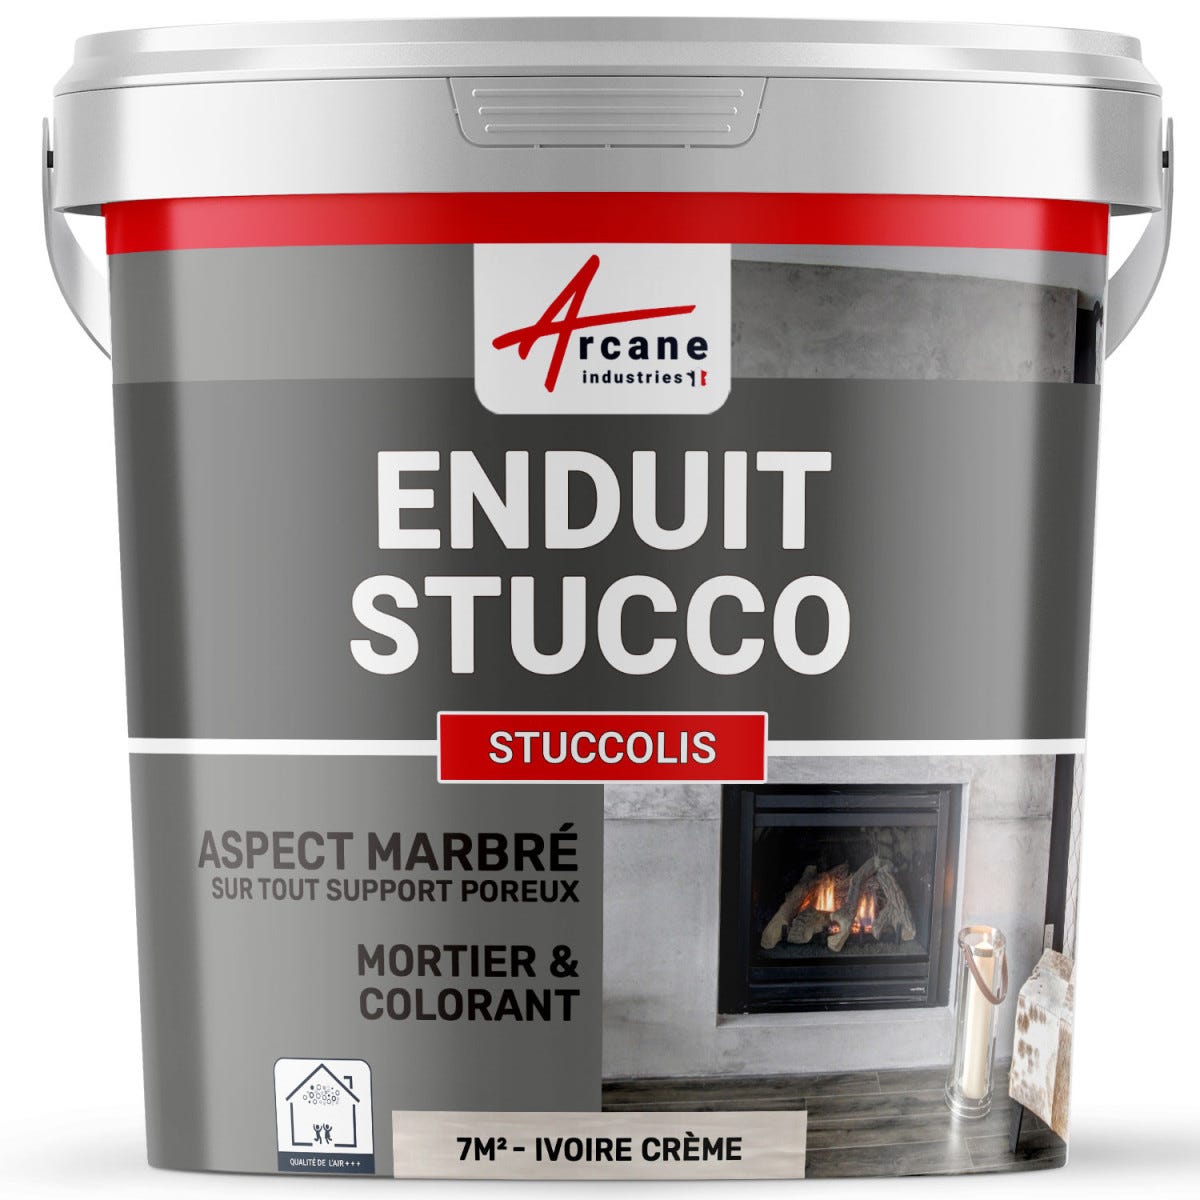 Mortier + teinte - stucco (sans primaire ni finition) - STUCCOLIS Mortier + teinte Ivoire Crème - kit jusqu'à 7 m²ARCANE INDUSTRIES 0